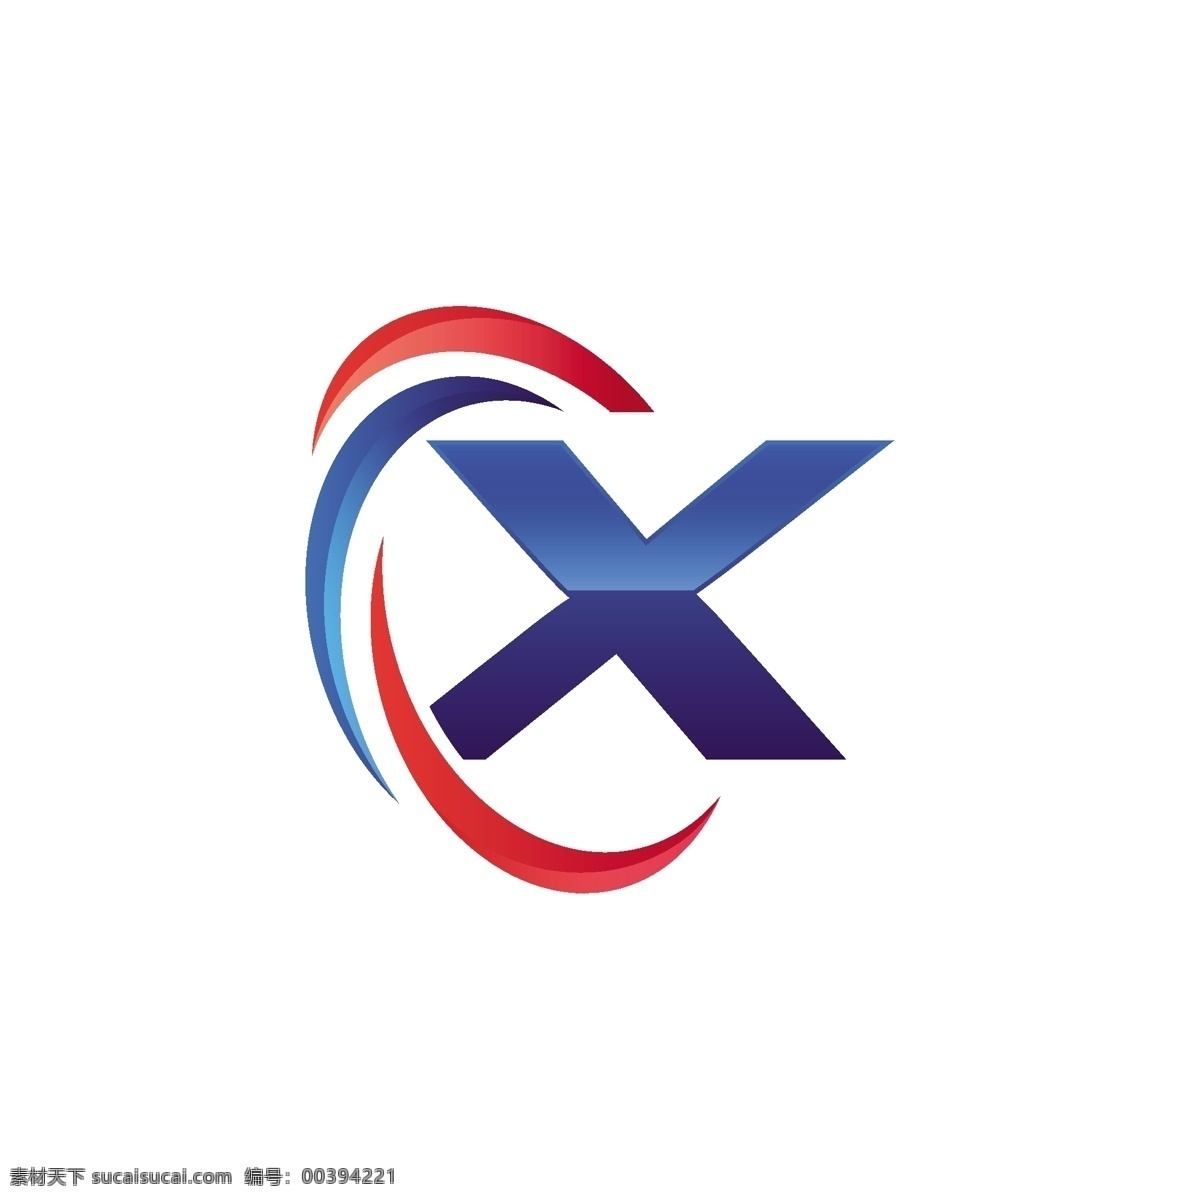 x 字母 造型 logo 工业 领域 科技 标志 创意 广告 化妆品 互联网 科技logo 多用途 标识 公司 简约 企业标识 企业logo 珠宝 能源 服装